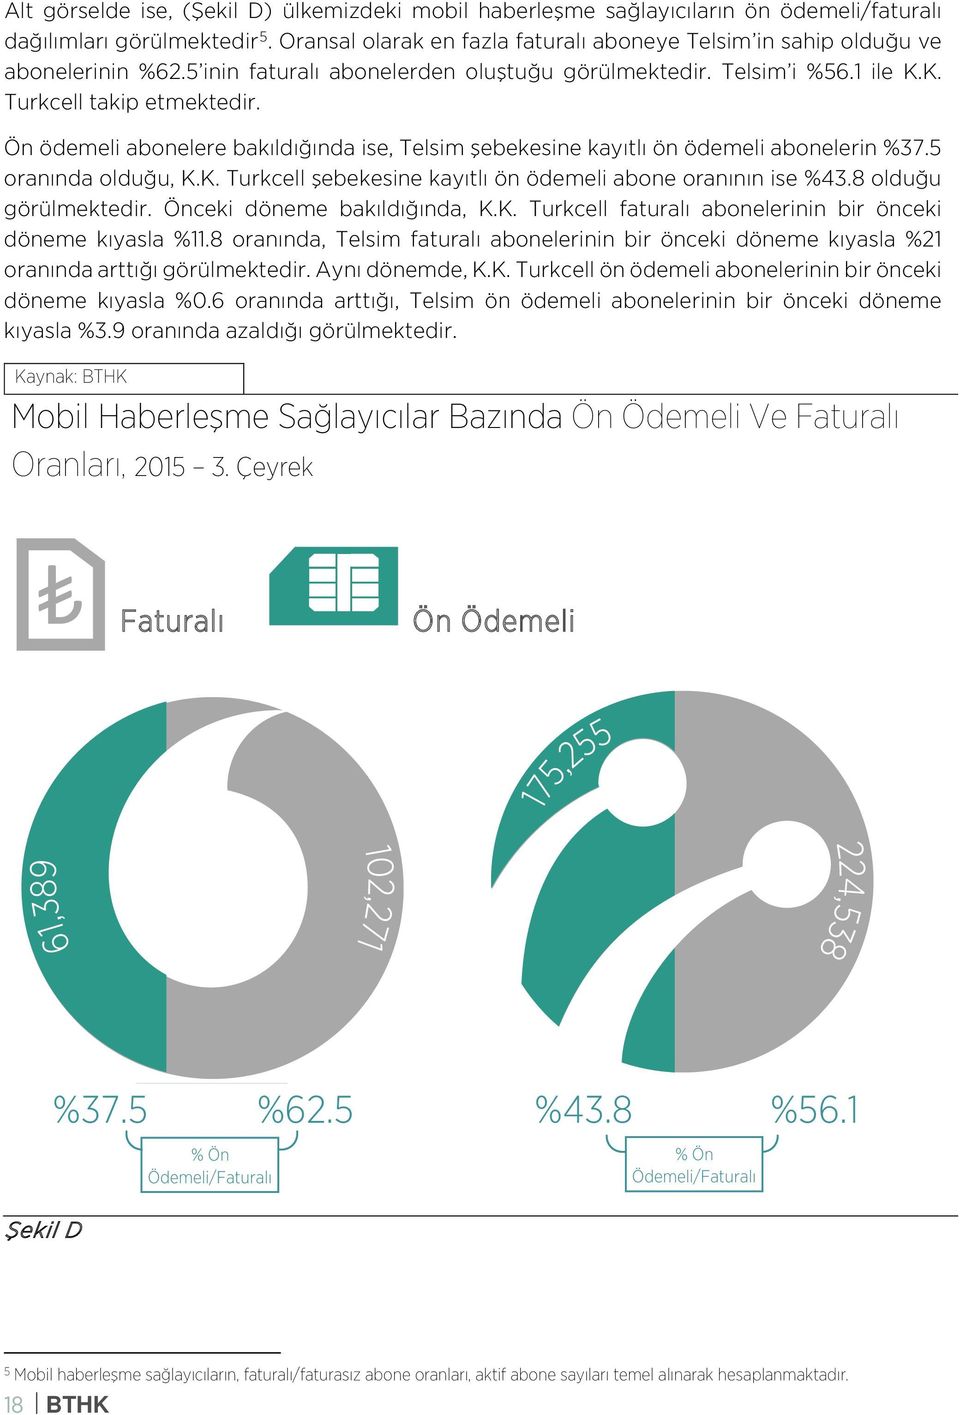 Ön ödemeli abonelere bakıldığında ise, Telsim şebekesine kayıtlı ön ödemeli abonelerin %37.5 oranında olduğu, K.K. Turkcell şebekesine kayıtlı ön ödemeli abone oranının ise %43.8 olduğu görülmektedir.